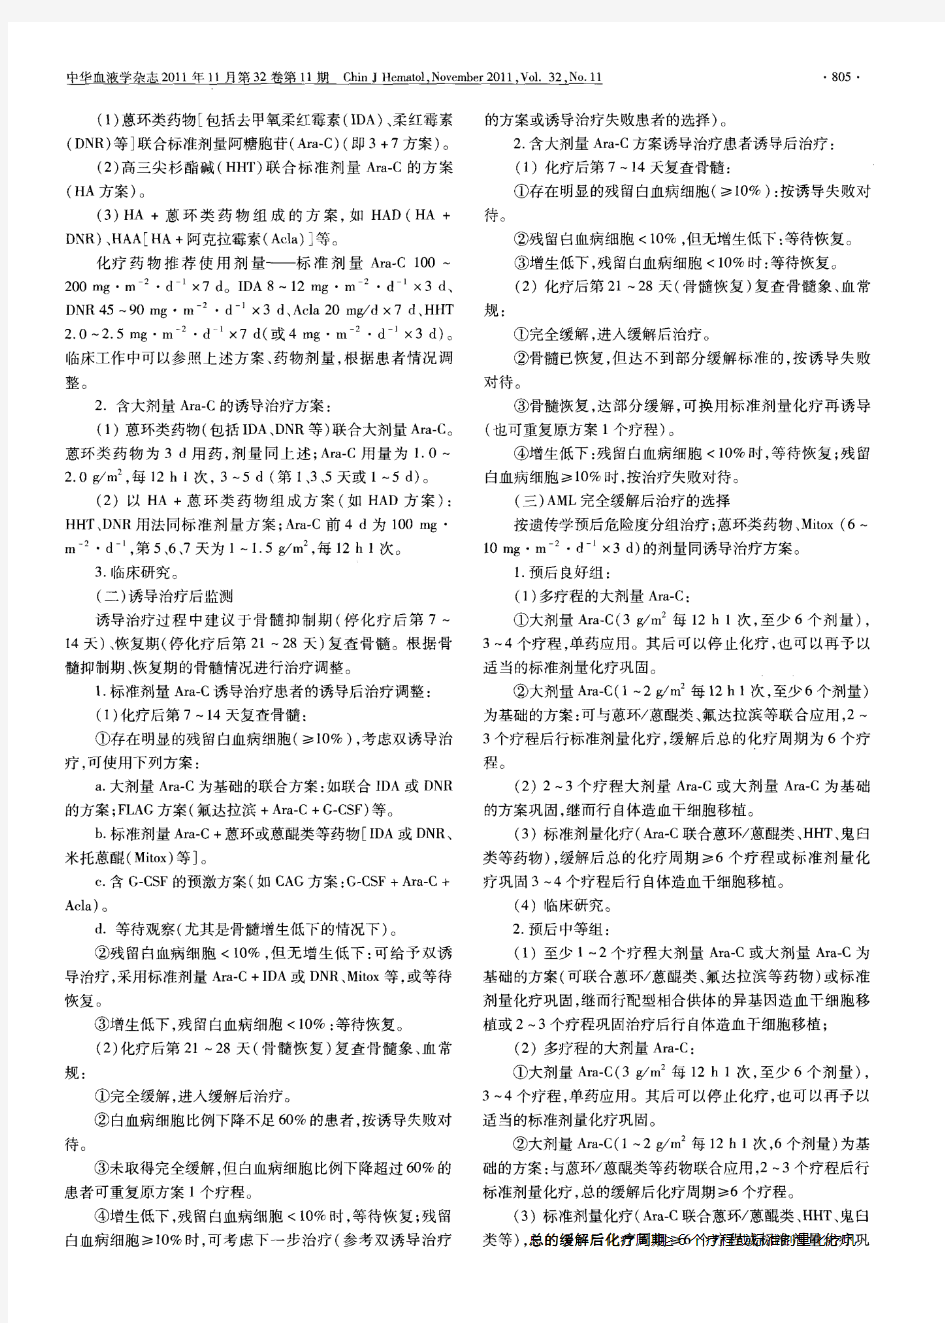 成人急性髓系白血病(非急性早幼粒细胞白血病)中国诊疗指南(2011年版)1